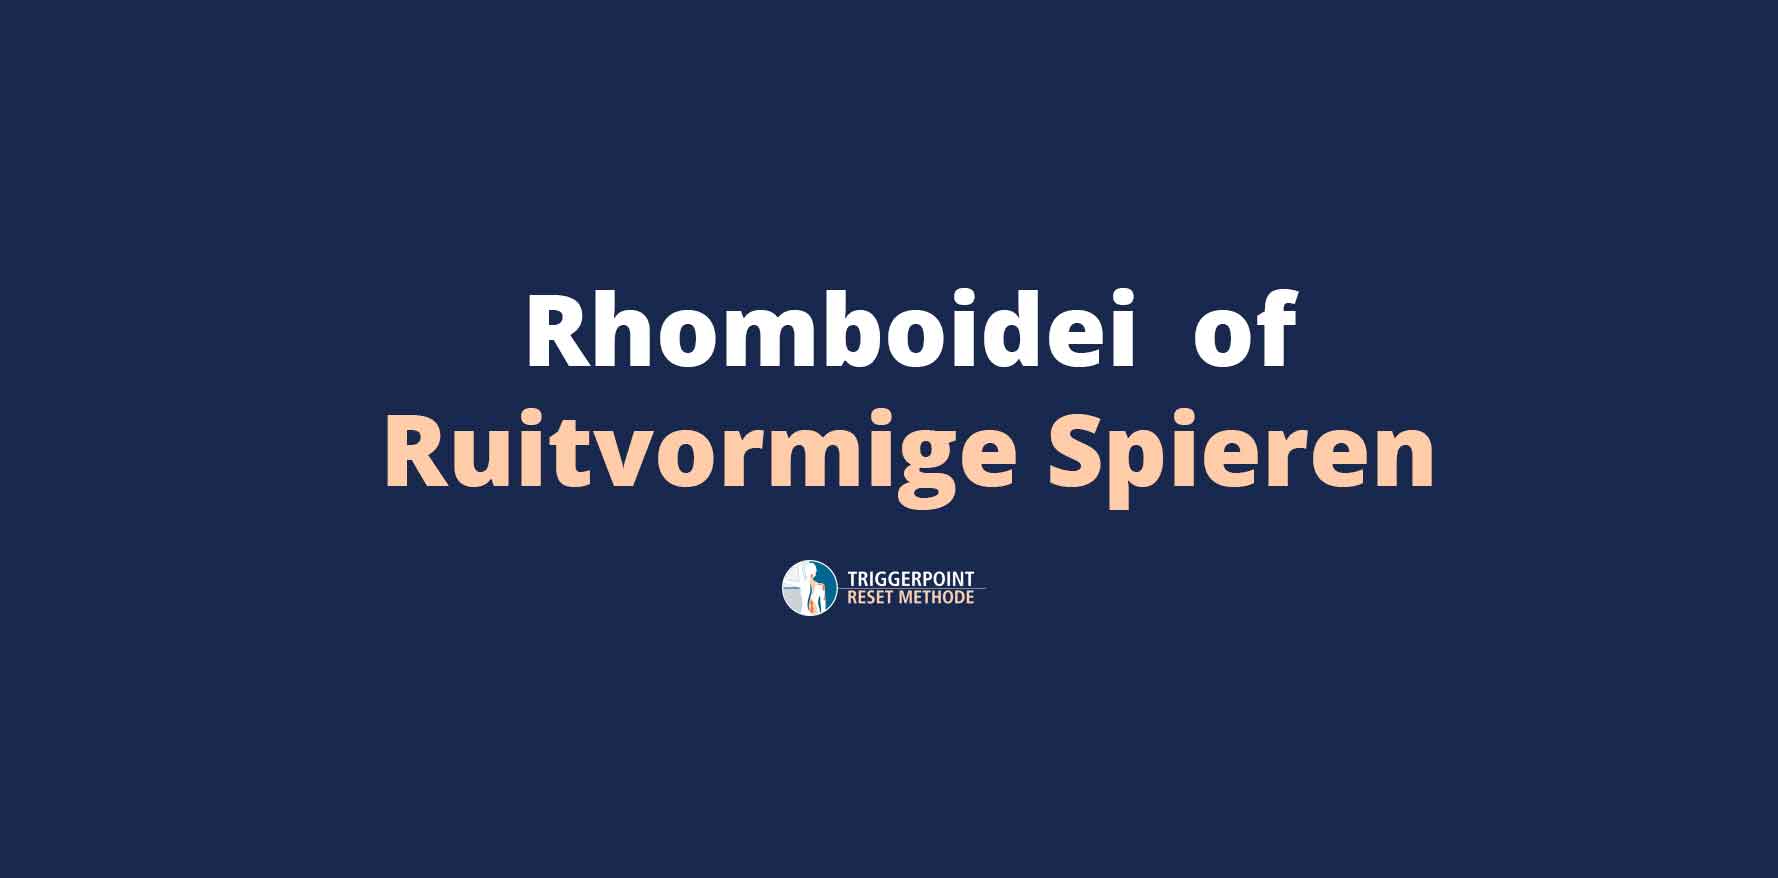 Rhomboidei of Ruitvormige Spieren